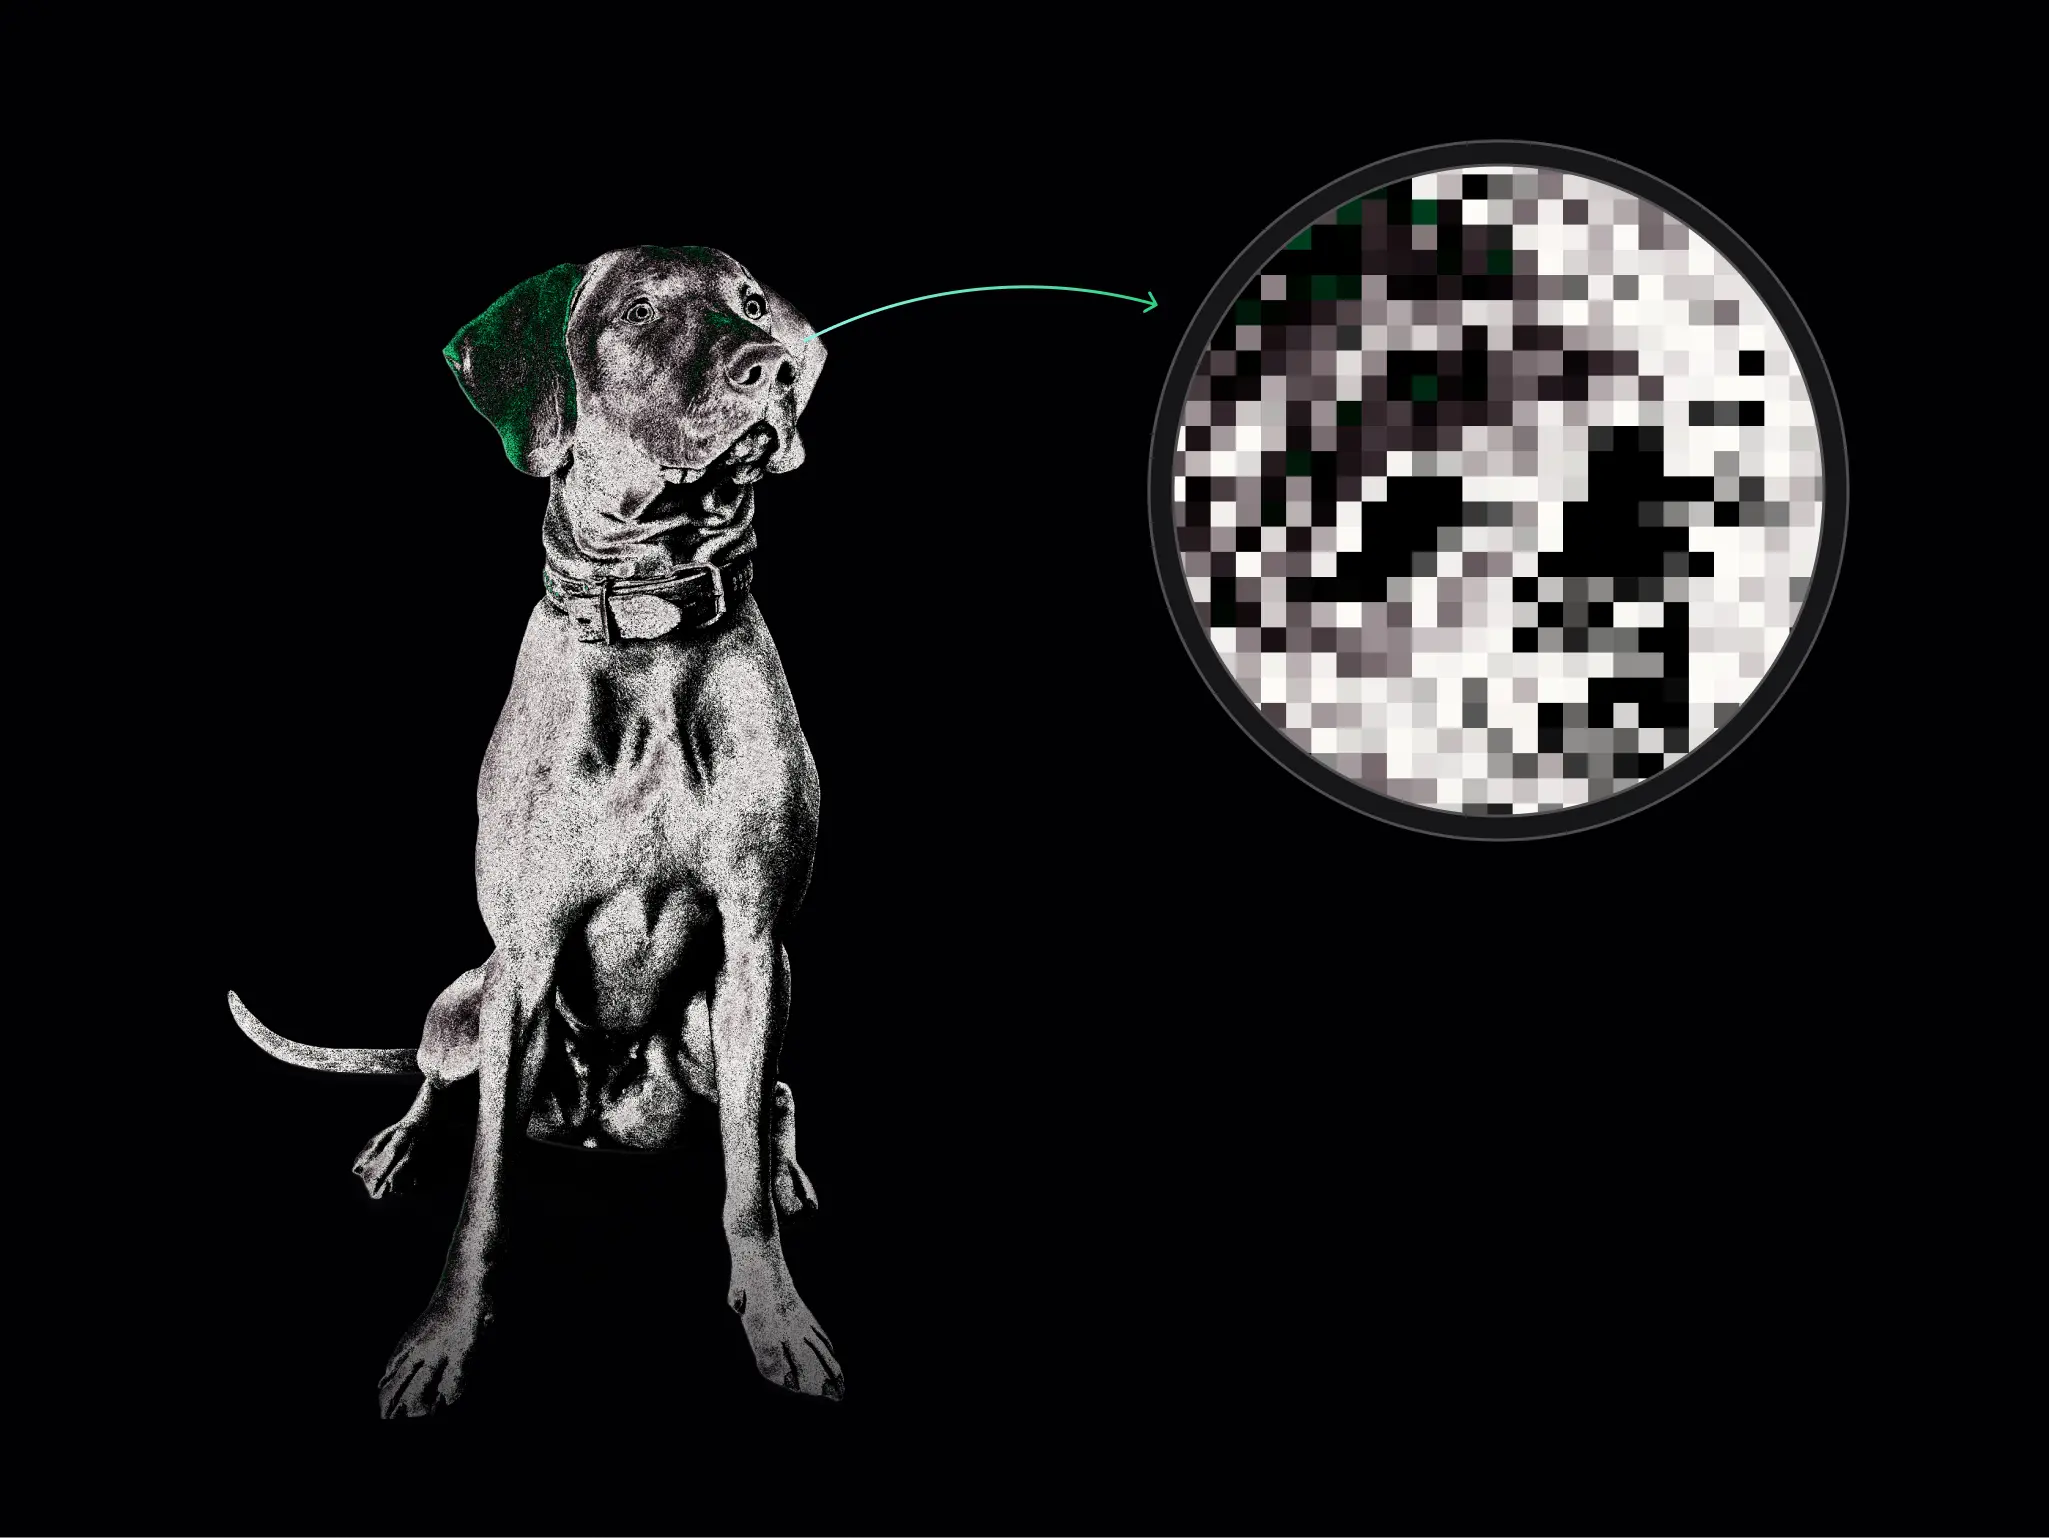 Monochromatyczny pies w obroży na czarnym tle z zielonymi akcentami, z prawej strony zbliżenie na piksele